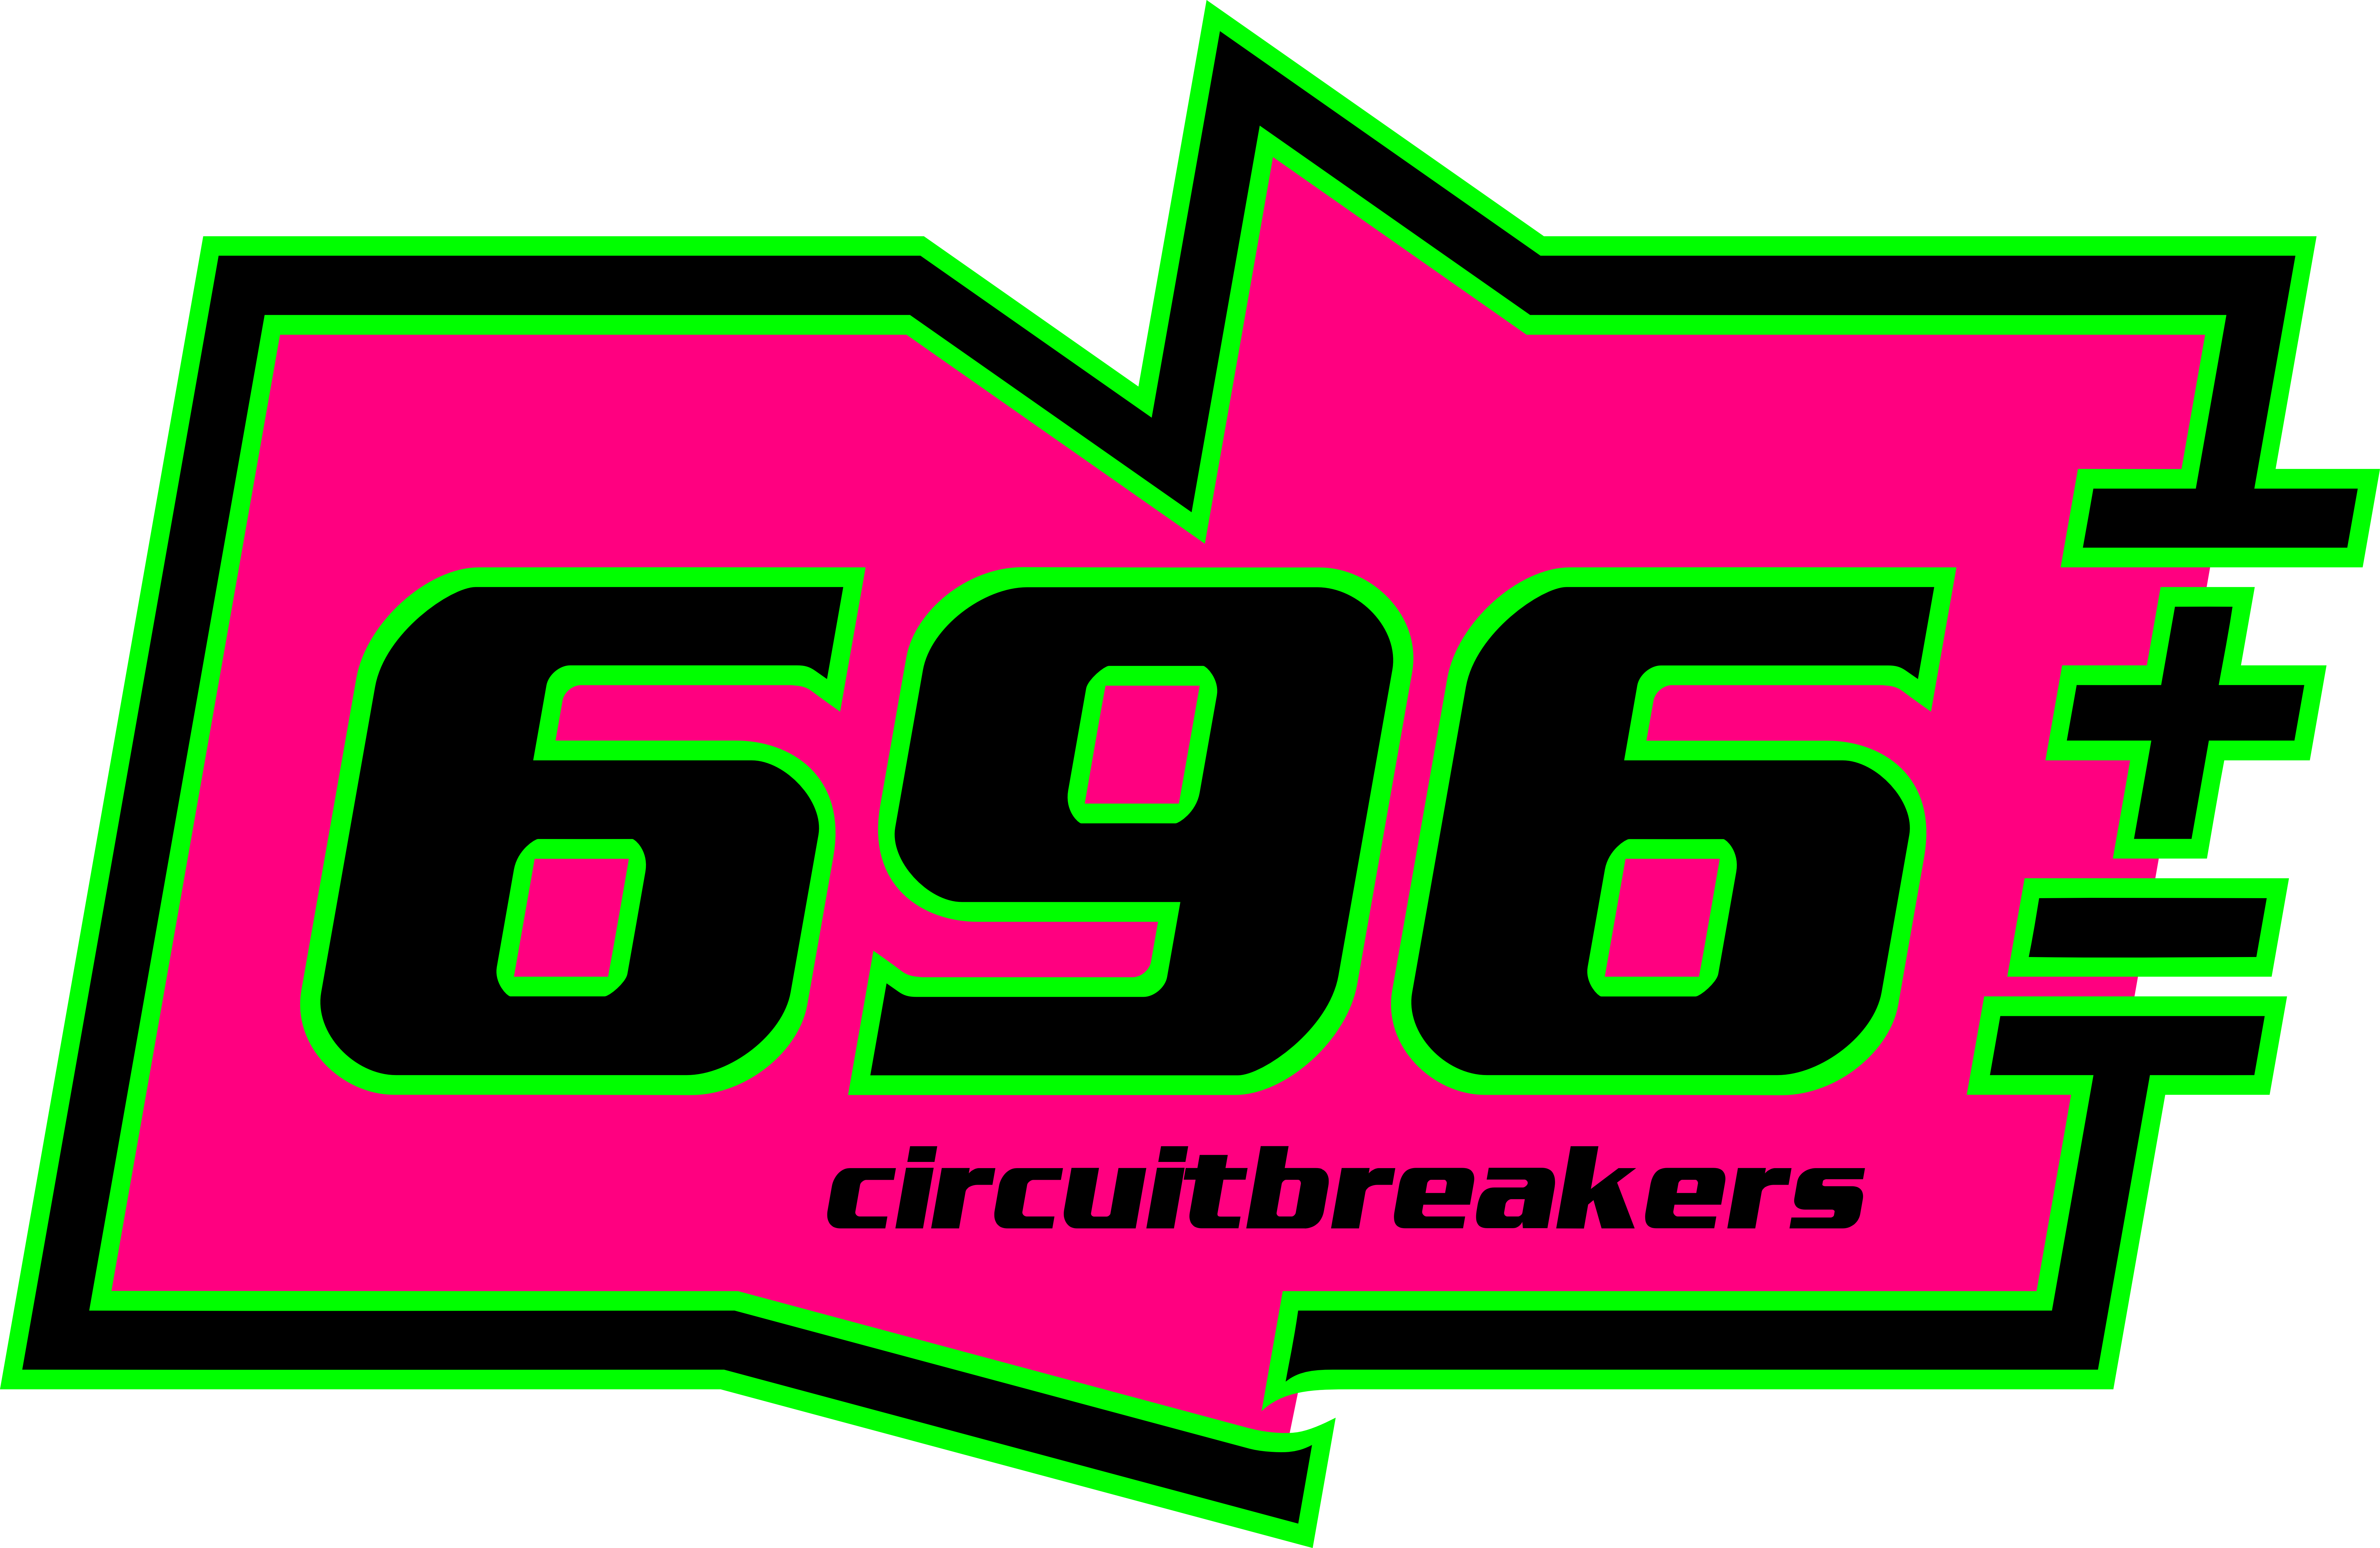 696's 2013 logo